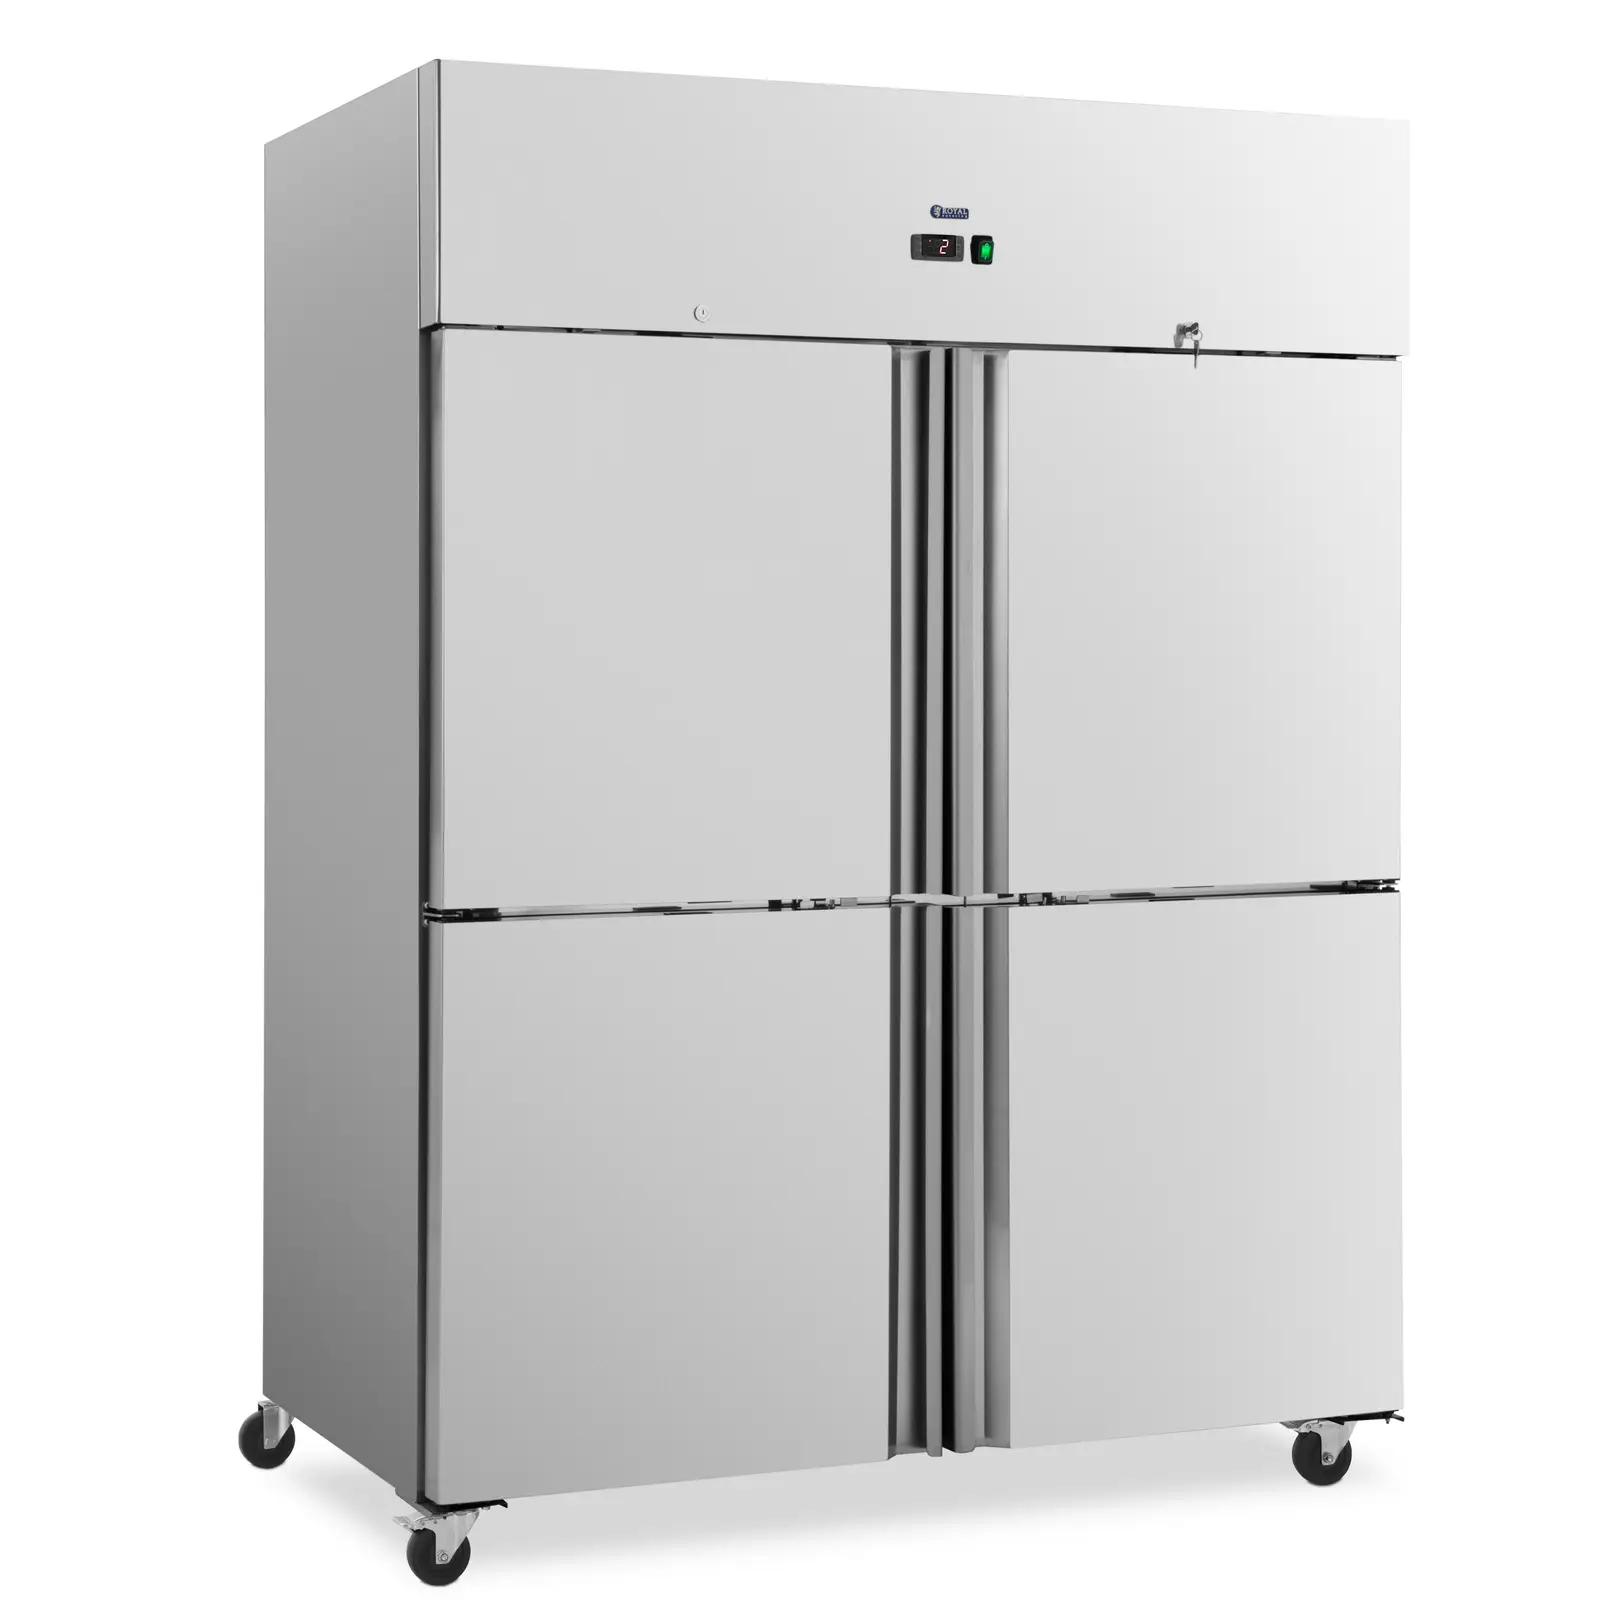 Търговски хладилник - 1001 л - неръждаема стомана - 4 врати - 4 колелца - заключващ се - Royal Catering